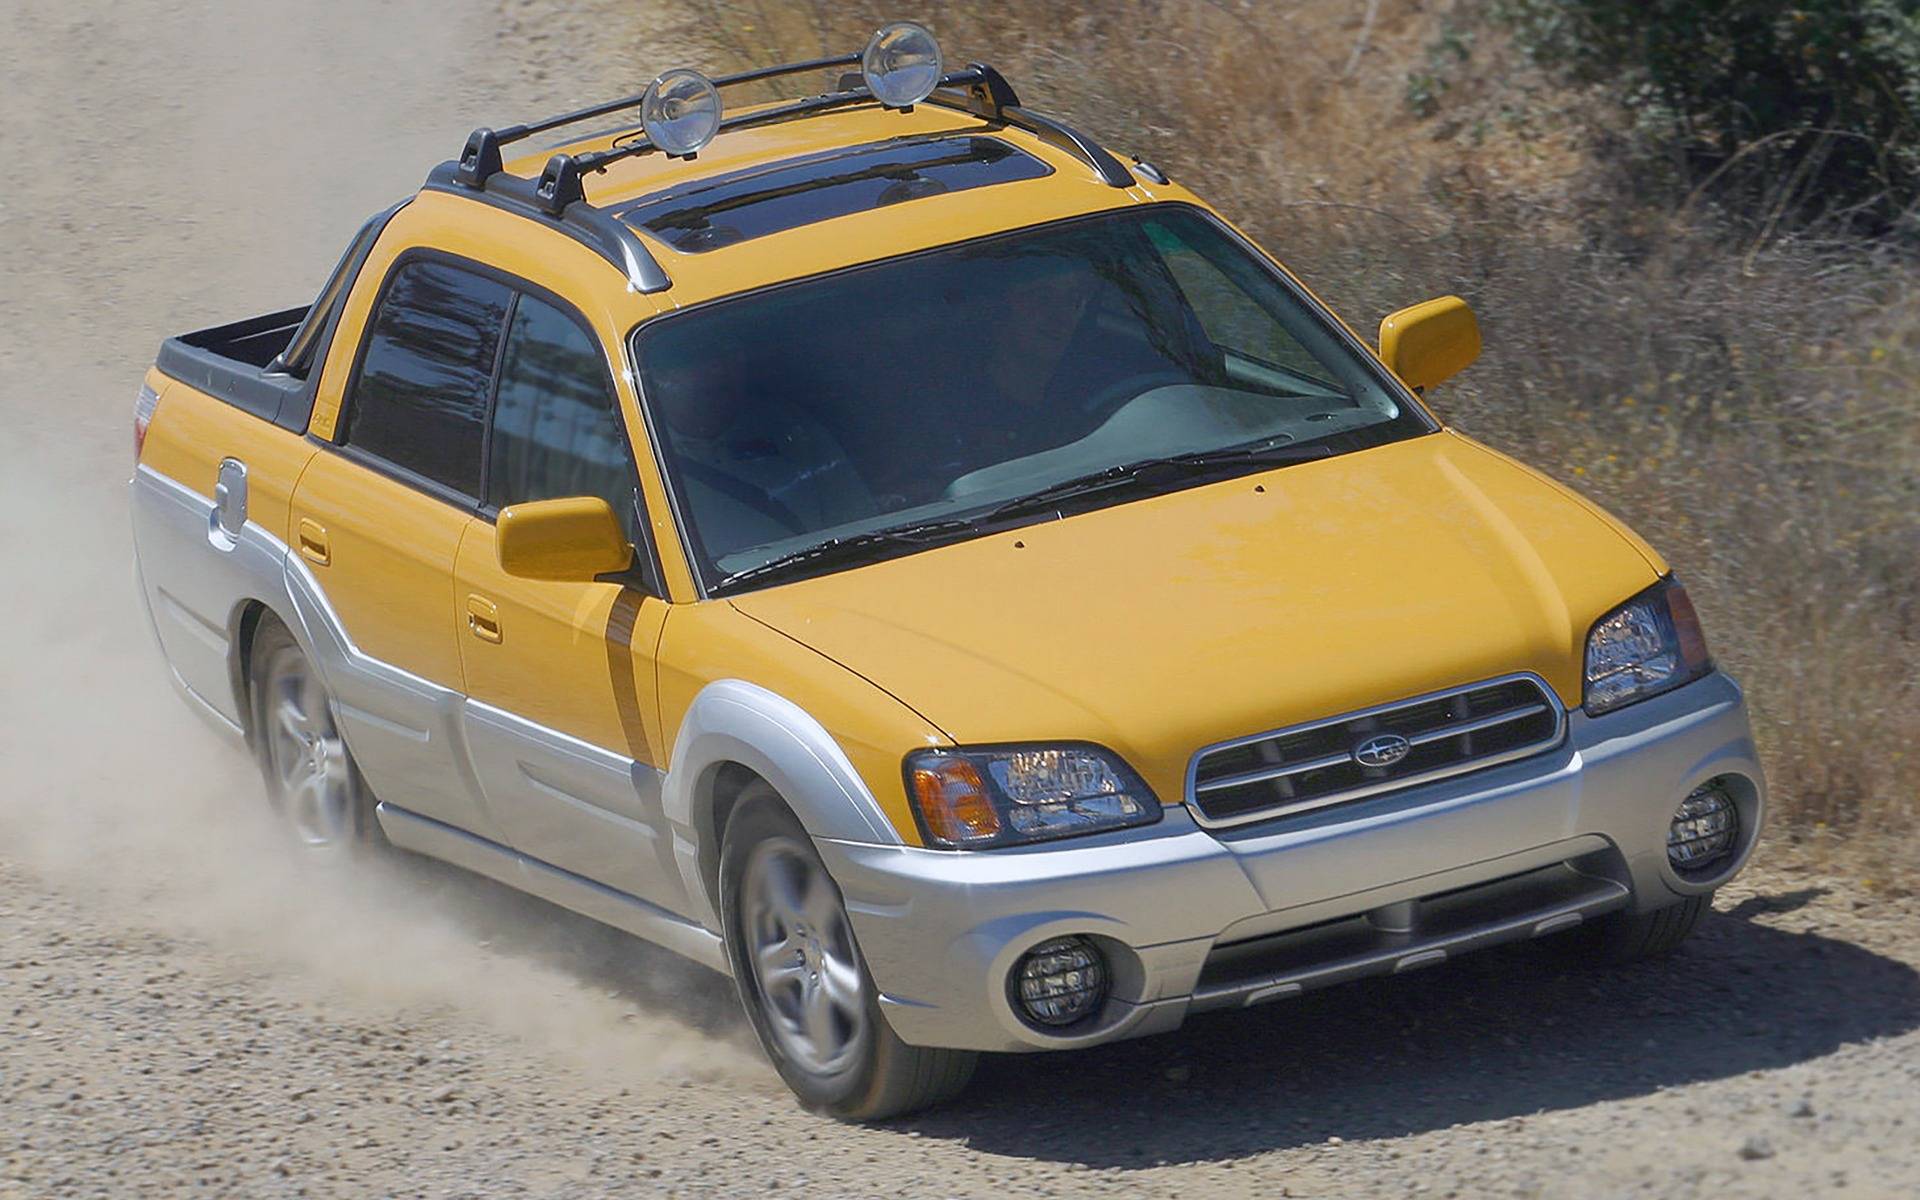 Camión amarillo Subaru Baja conduciendo en un camino de tierra